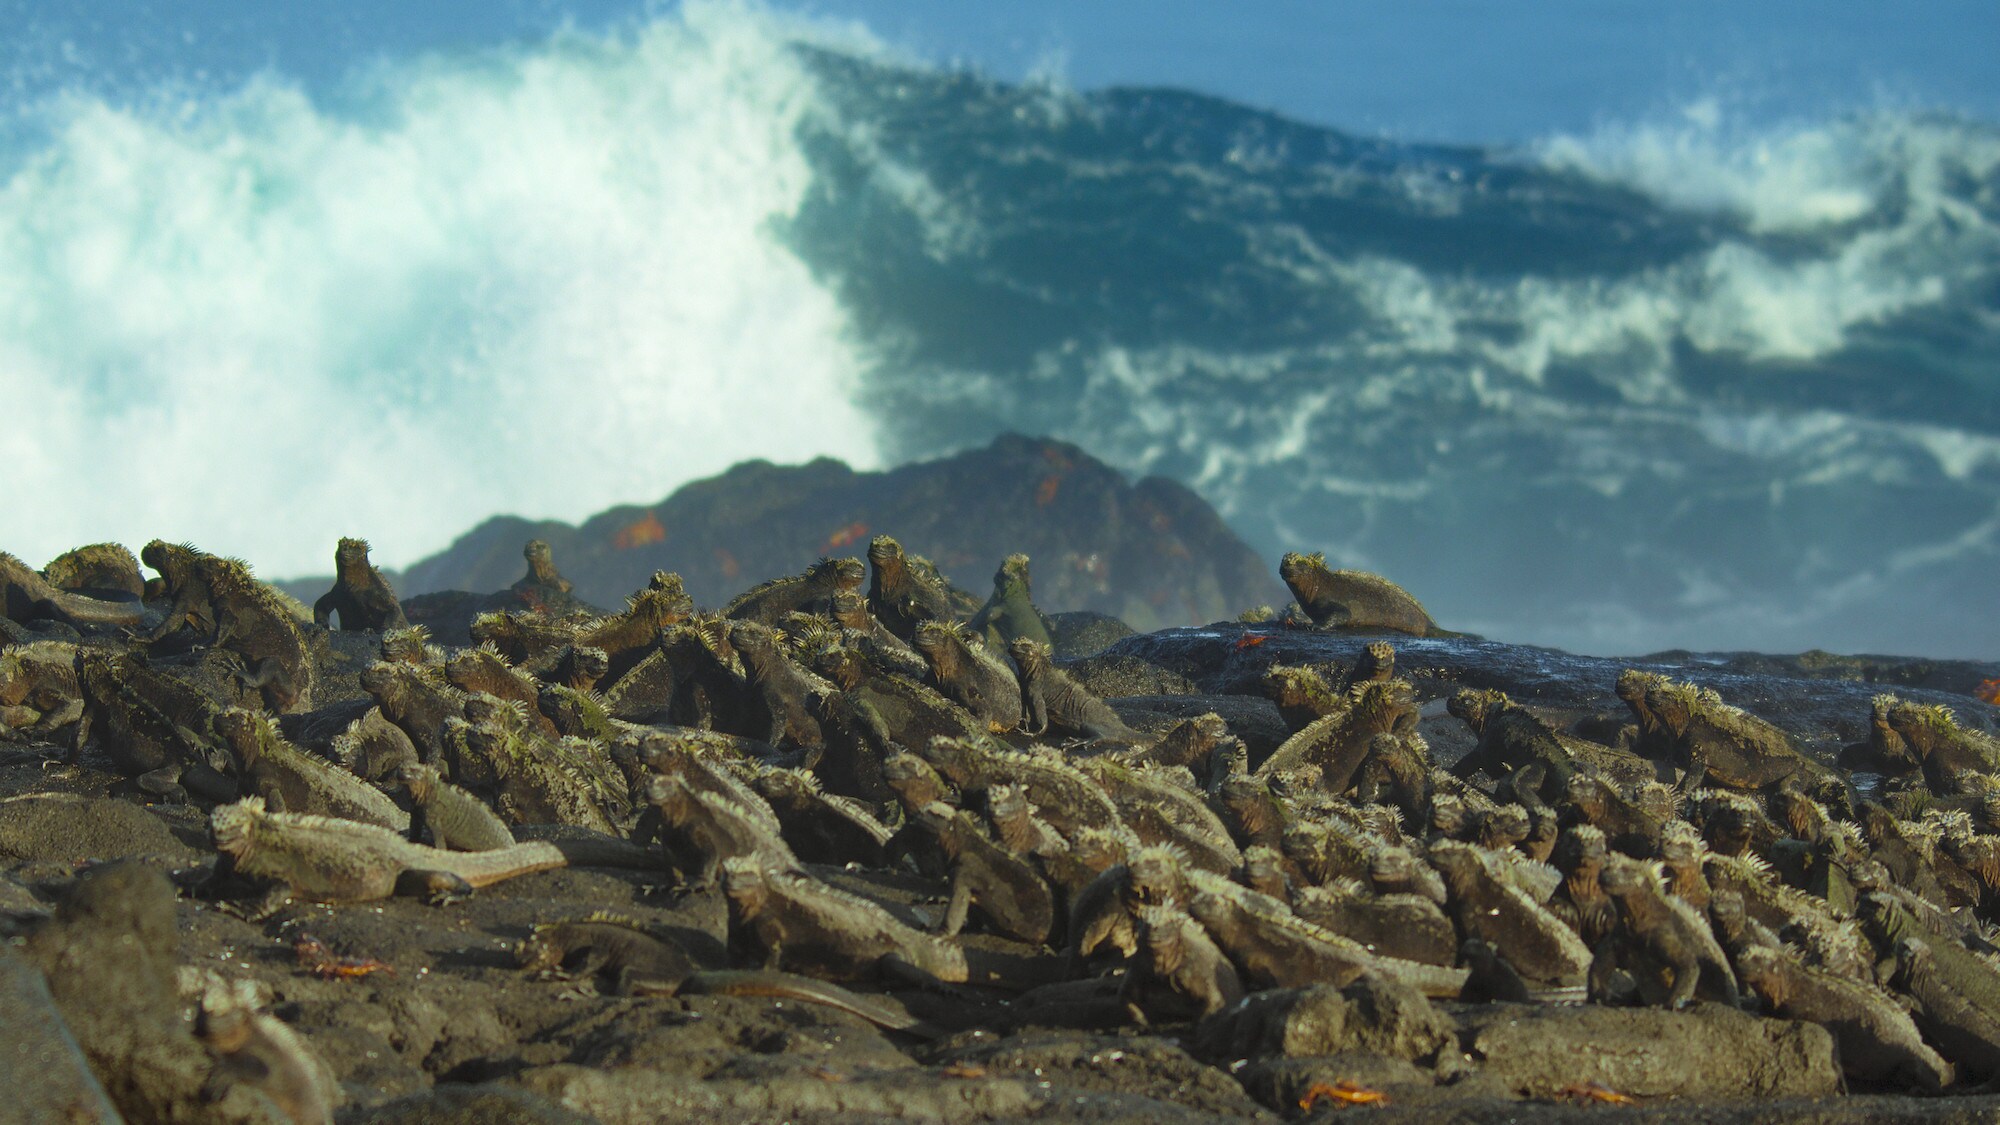 Large group shot of Marine iguanas basking on the rocks. (National Geographic for Disney+/Sam Stewart)